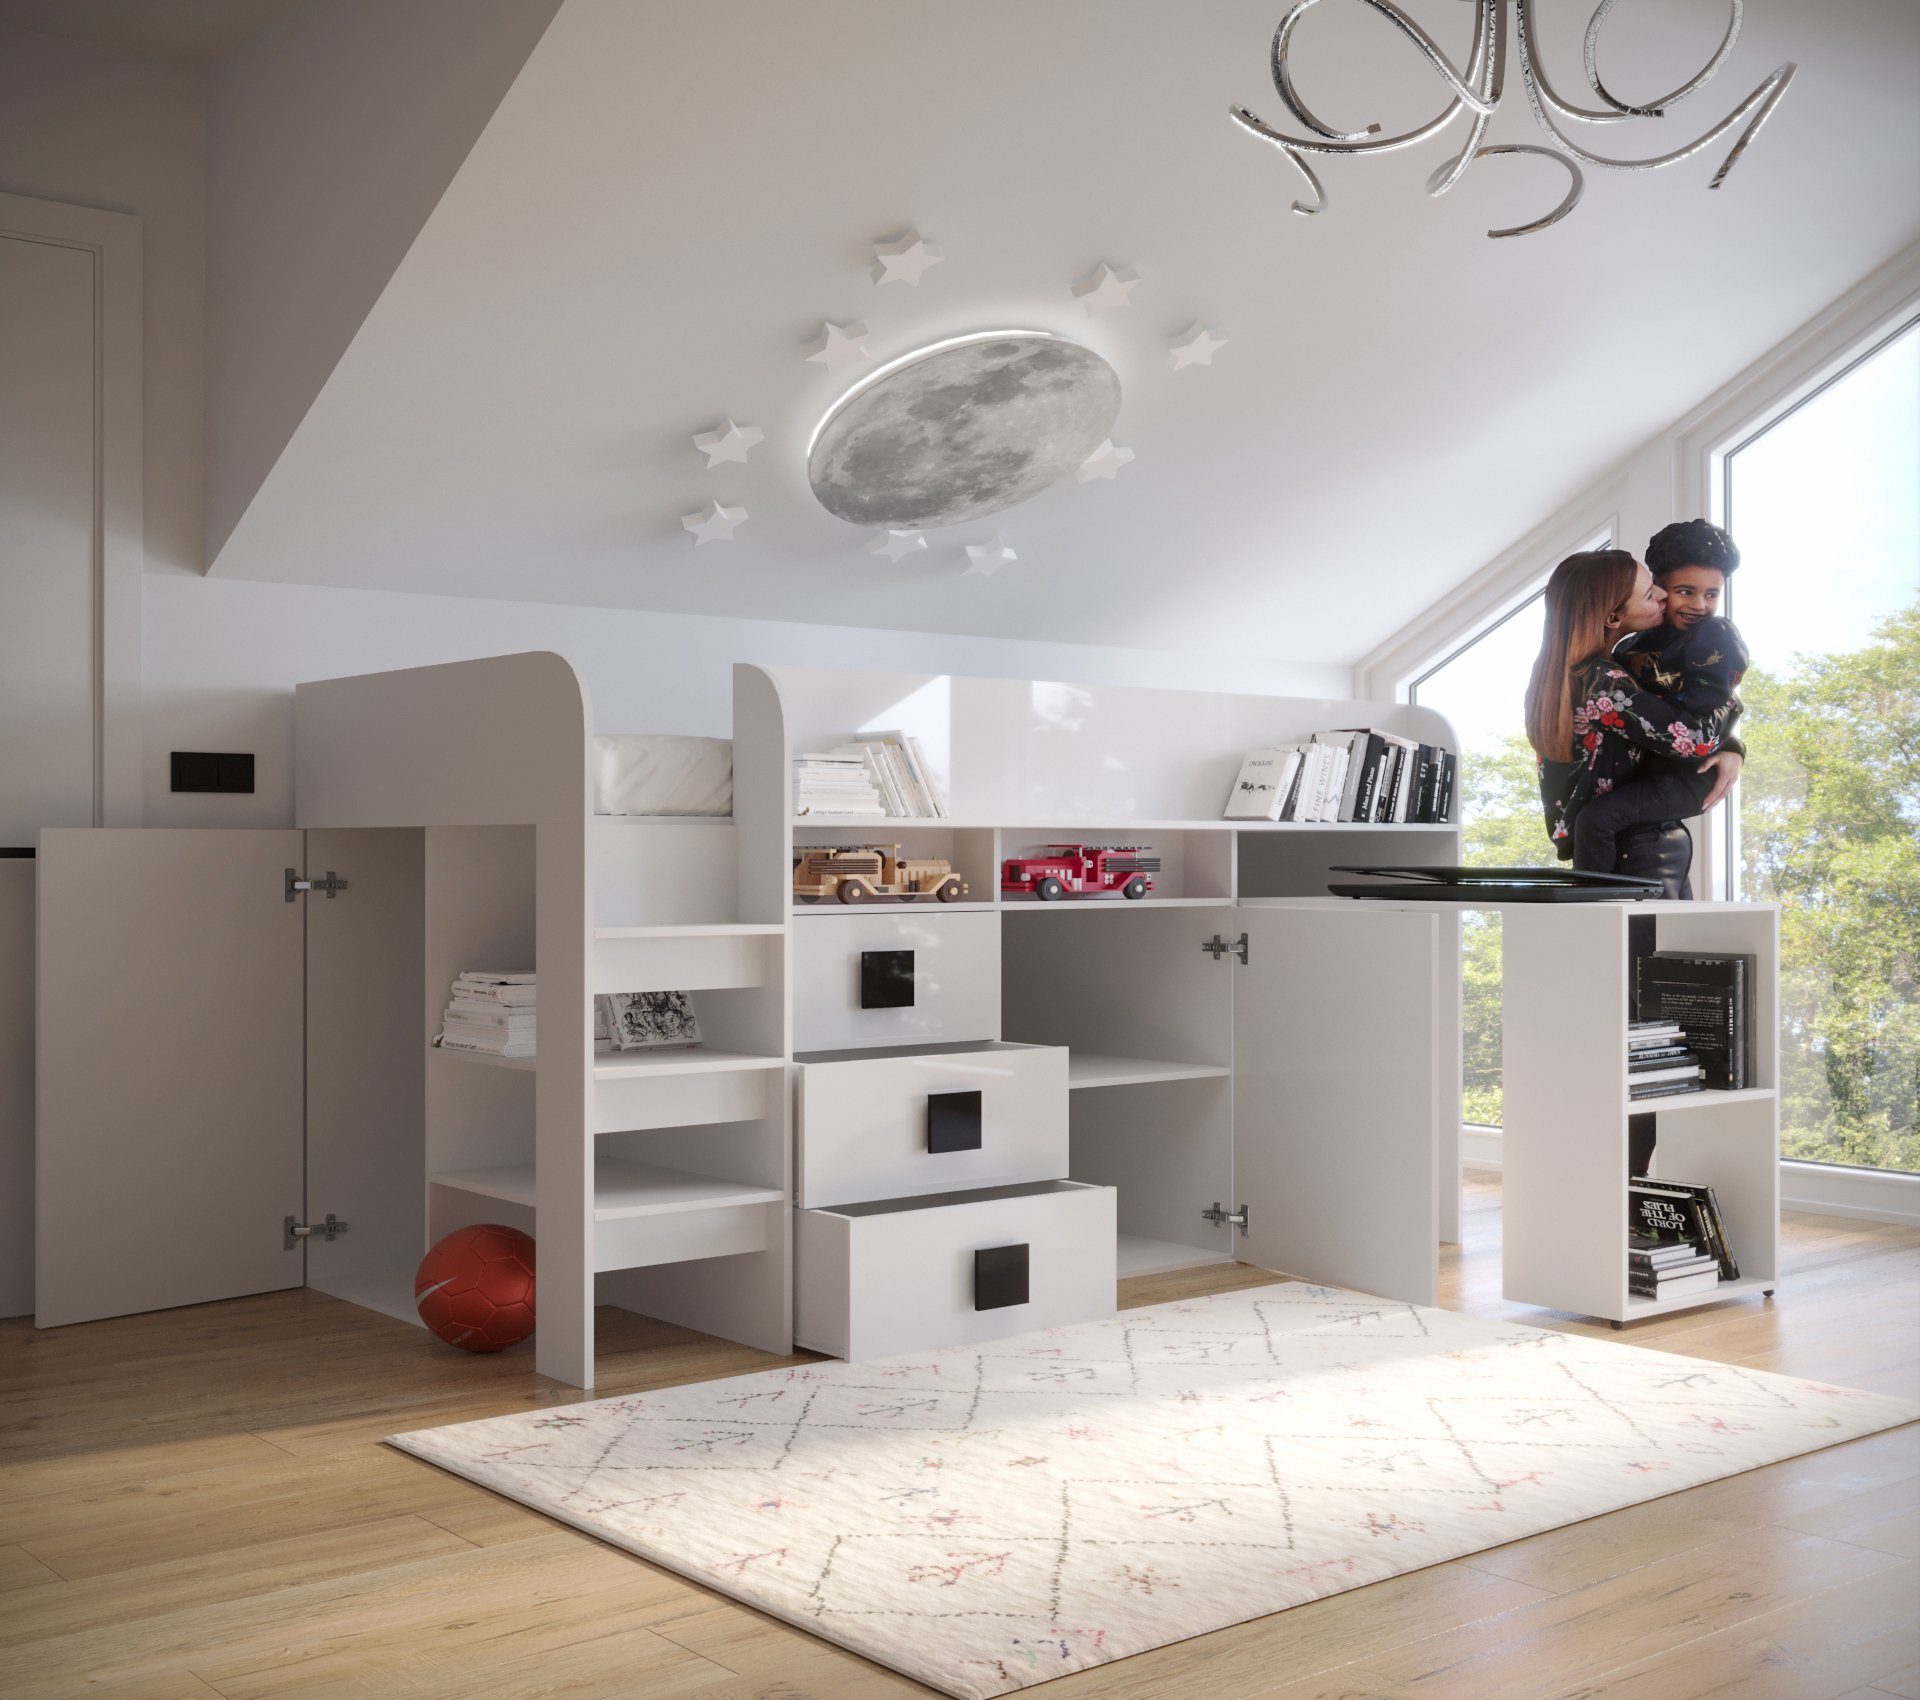 Weiß/Griffe Unique Türkis mit Home Hochbett,Etagenbett Schreibtisch Hochbett Treppe, TOL1, Schubladen und